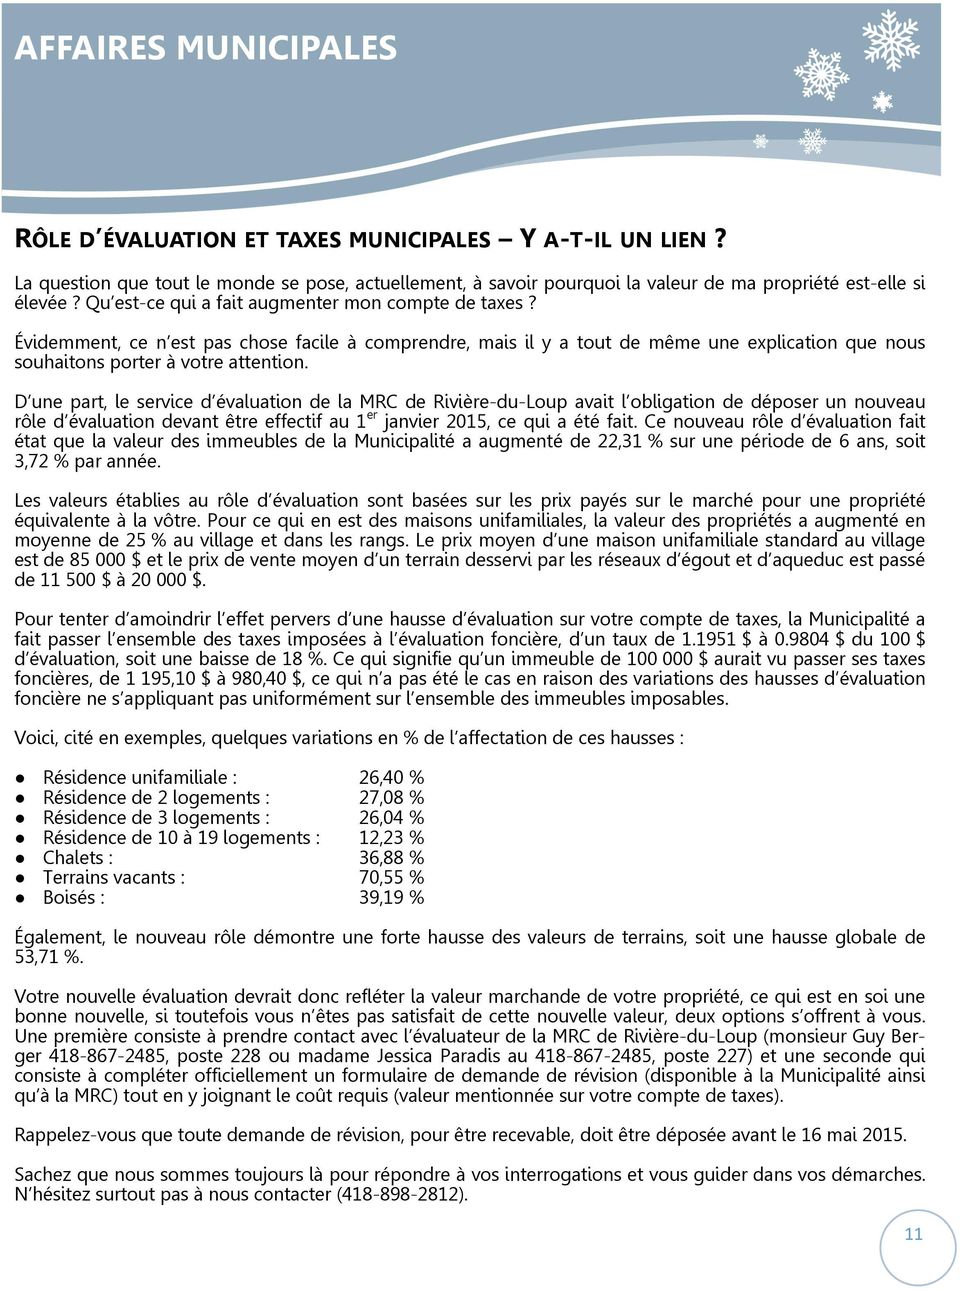 D une part, le service d évaluation de la MRC de Rivière-du-Loup avait l obligation de déposer un nouveau rôle d évaluation devant être effectif au 1 er janvier 2015, ce qui a été fait.